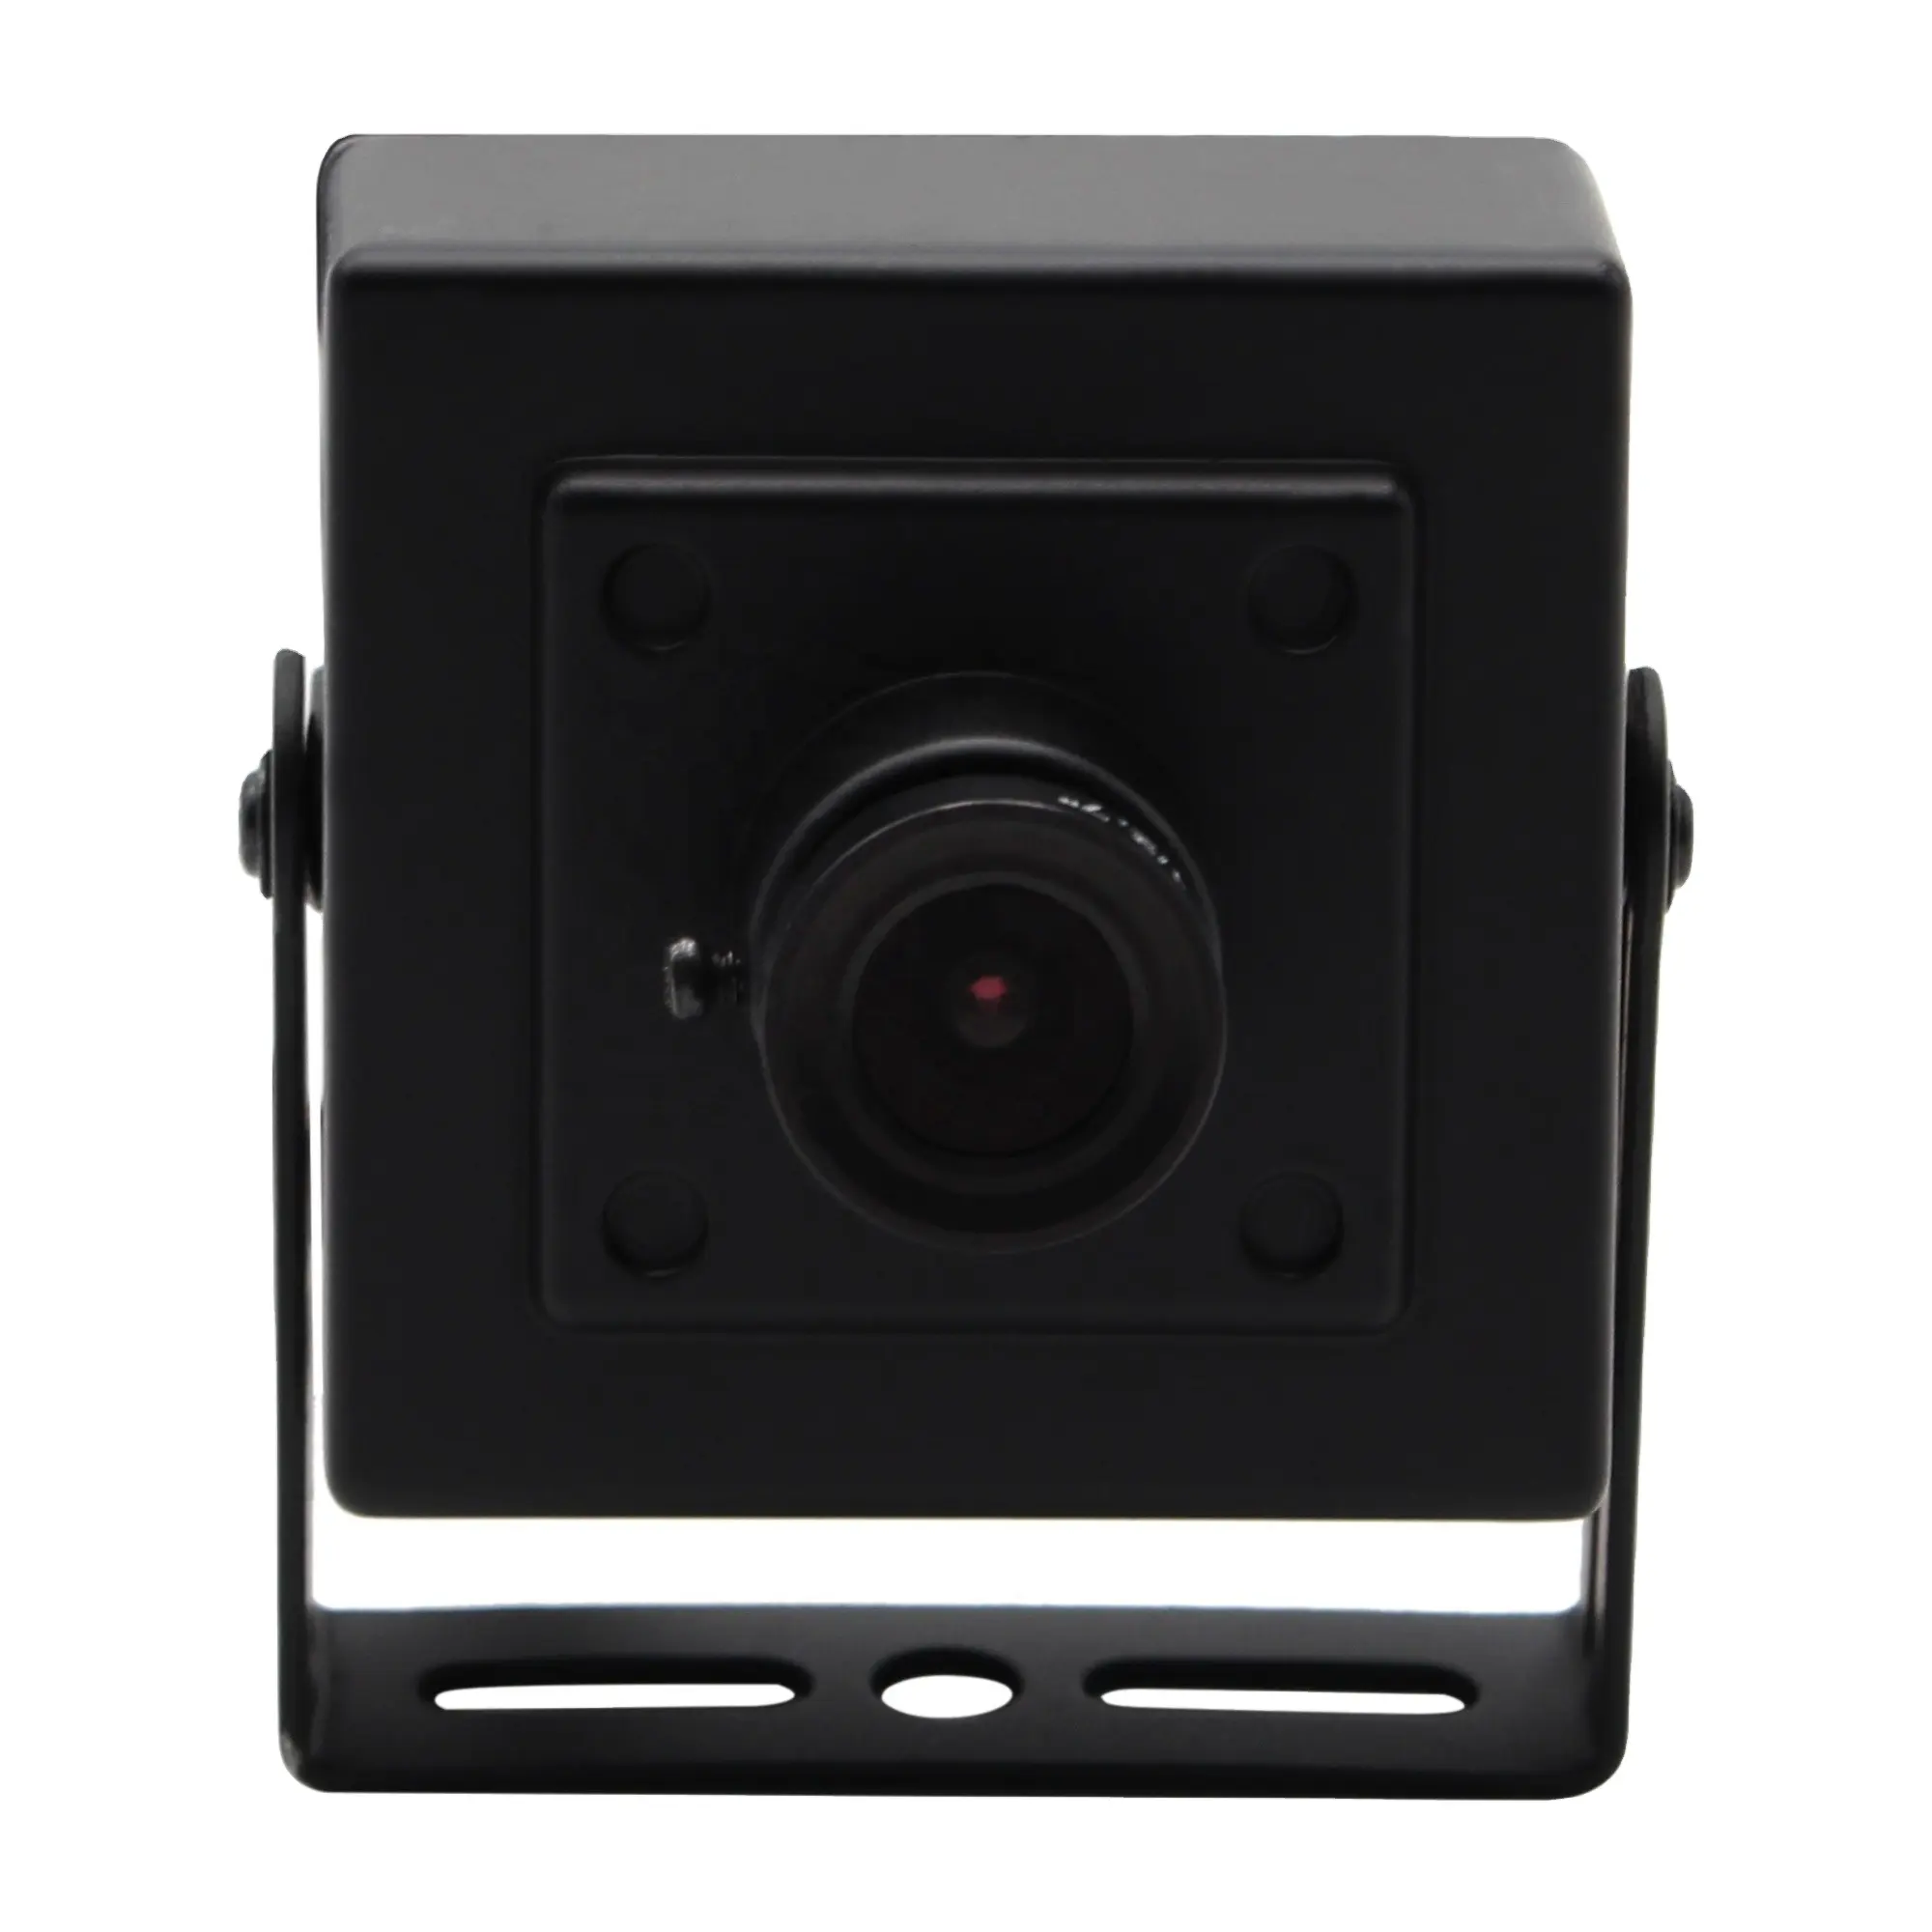 Full Hd Web Camera 3264x2448 Webcam 1080p Web Camera 8.0megapixel Uvc Plug Play Web Camera For Car